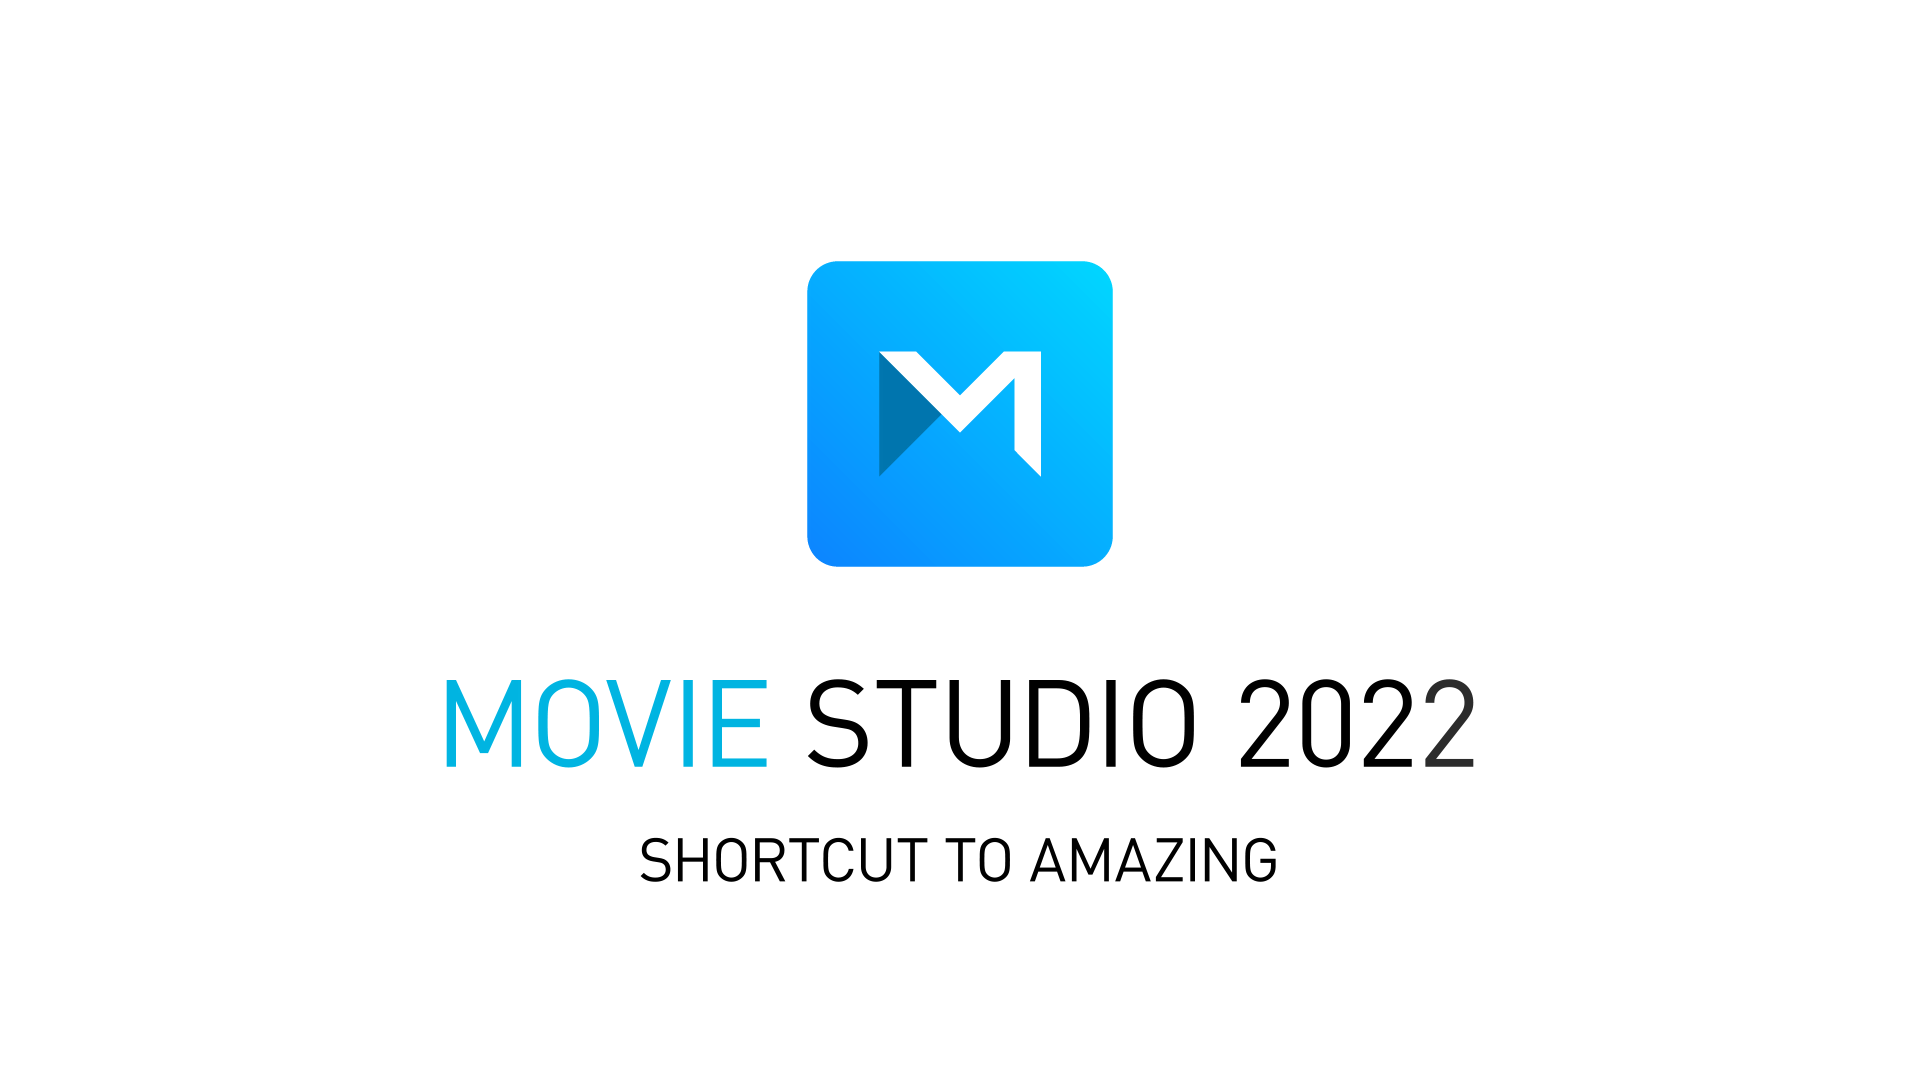 We hebben belangrijk nieuws voor jouw Movie Studio